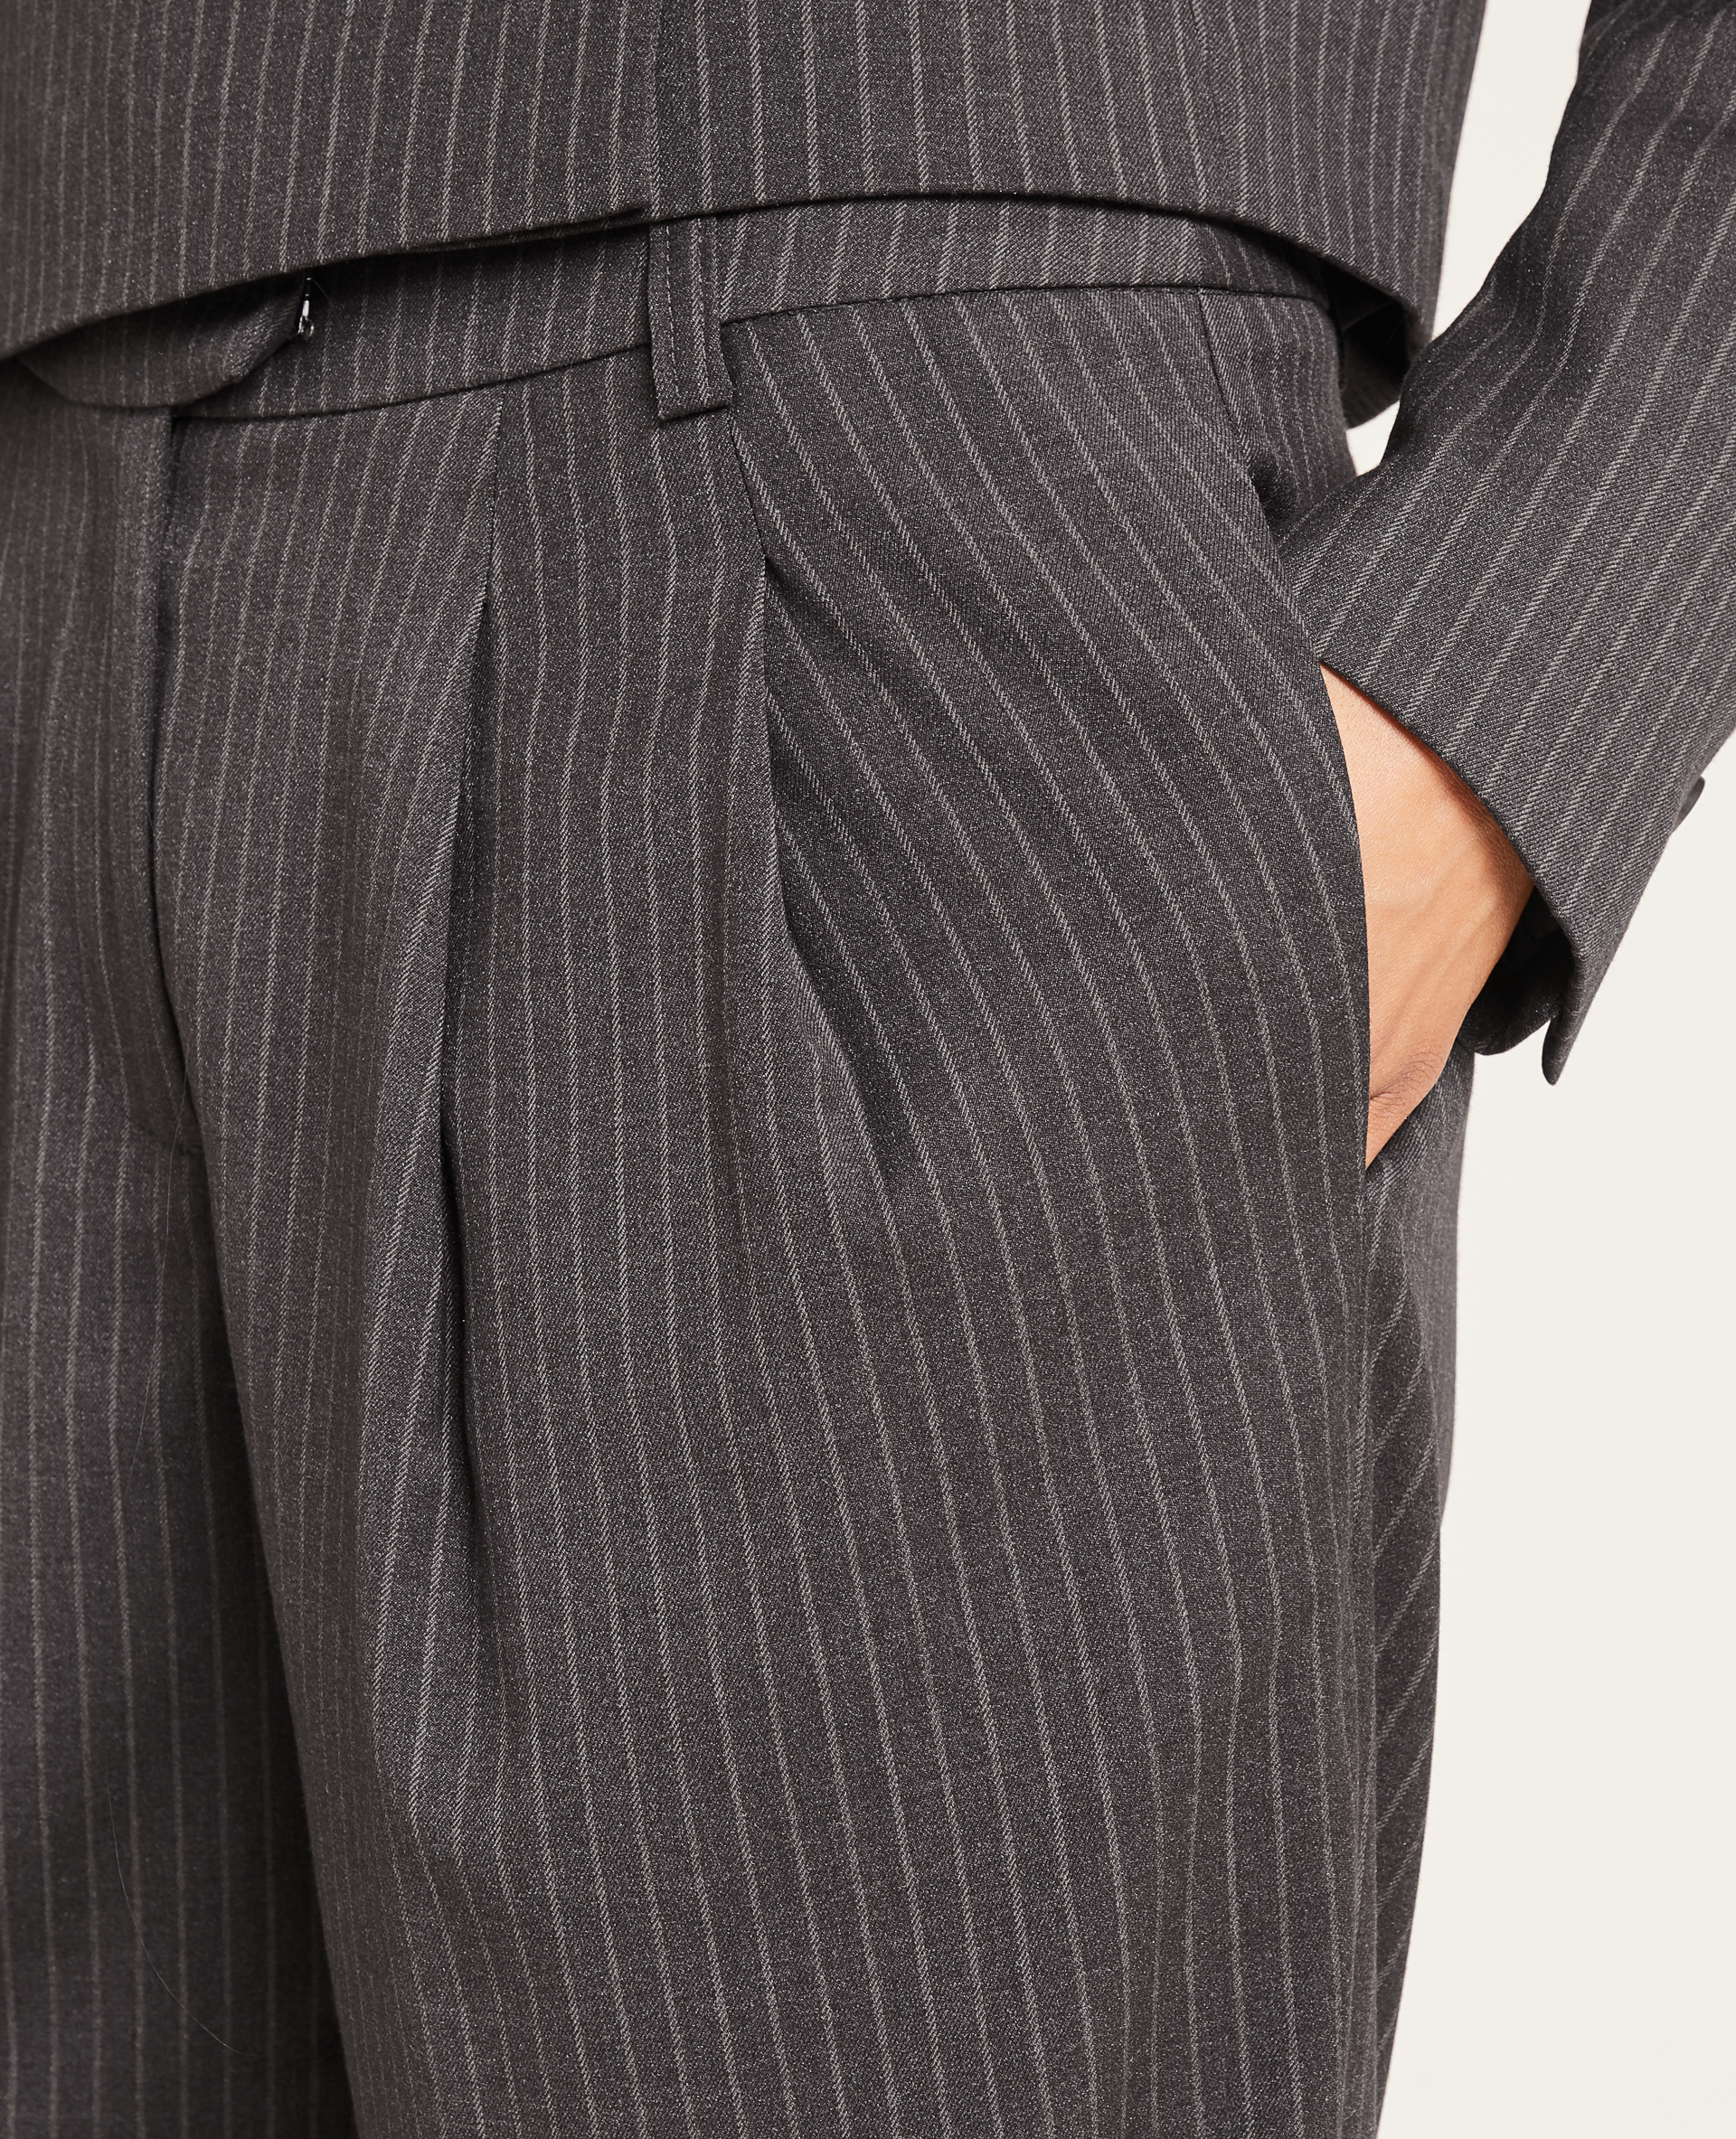 Pantalon large et droit à pinces SMALL marron - Pimkie